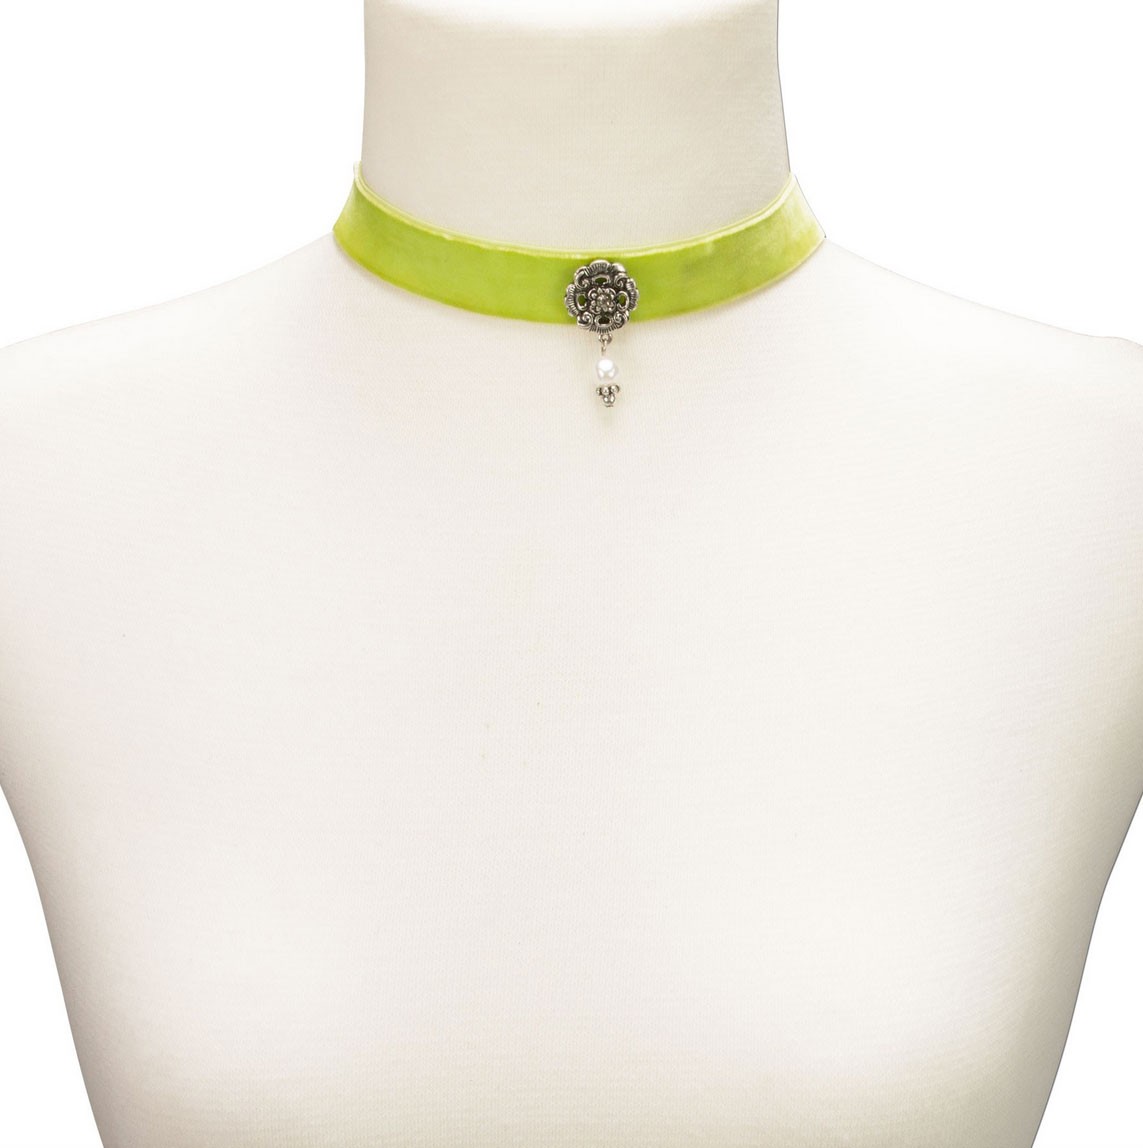 Aperçu: Collier ras de cou avec bijoux pendant vert clair